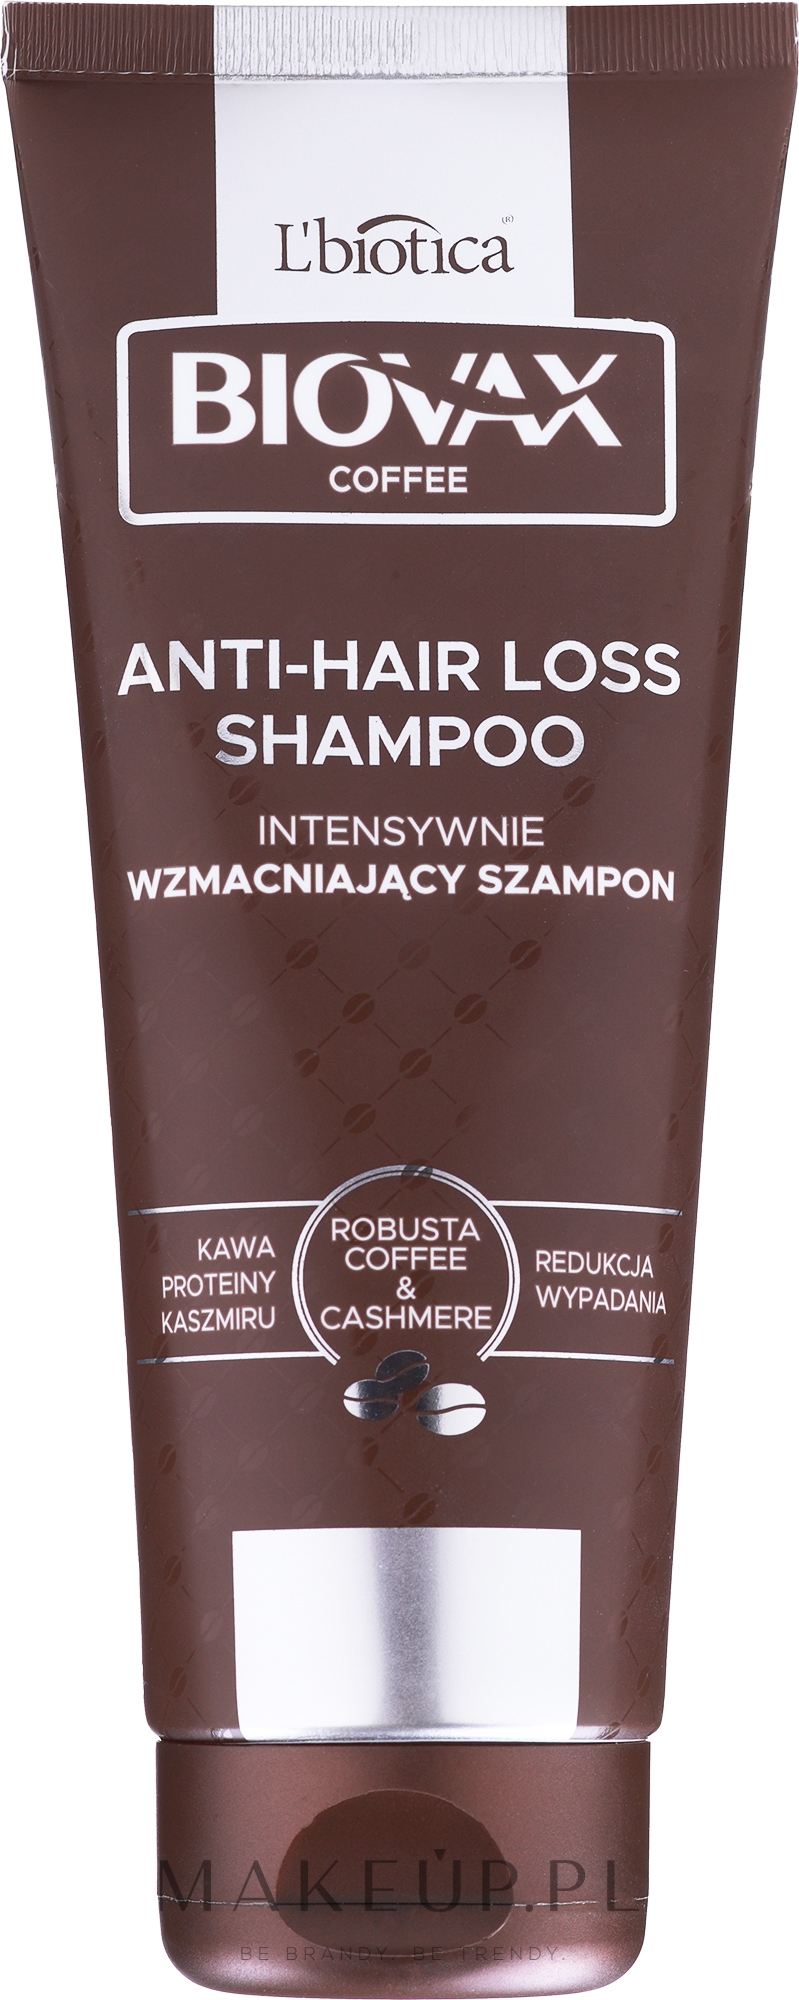 biovax glamour szampon wizaz